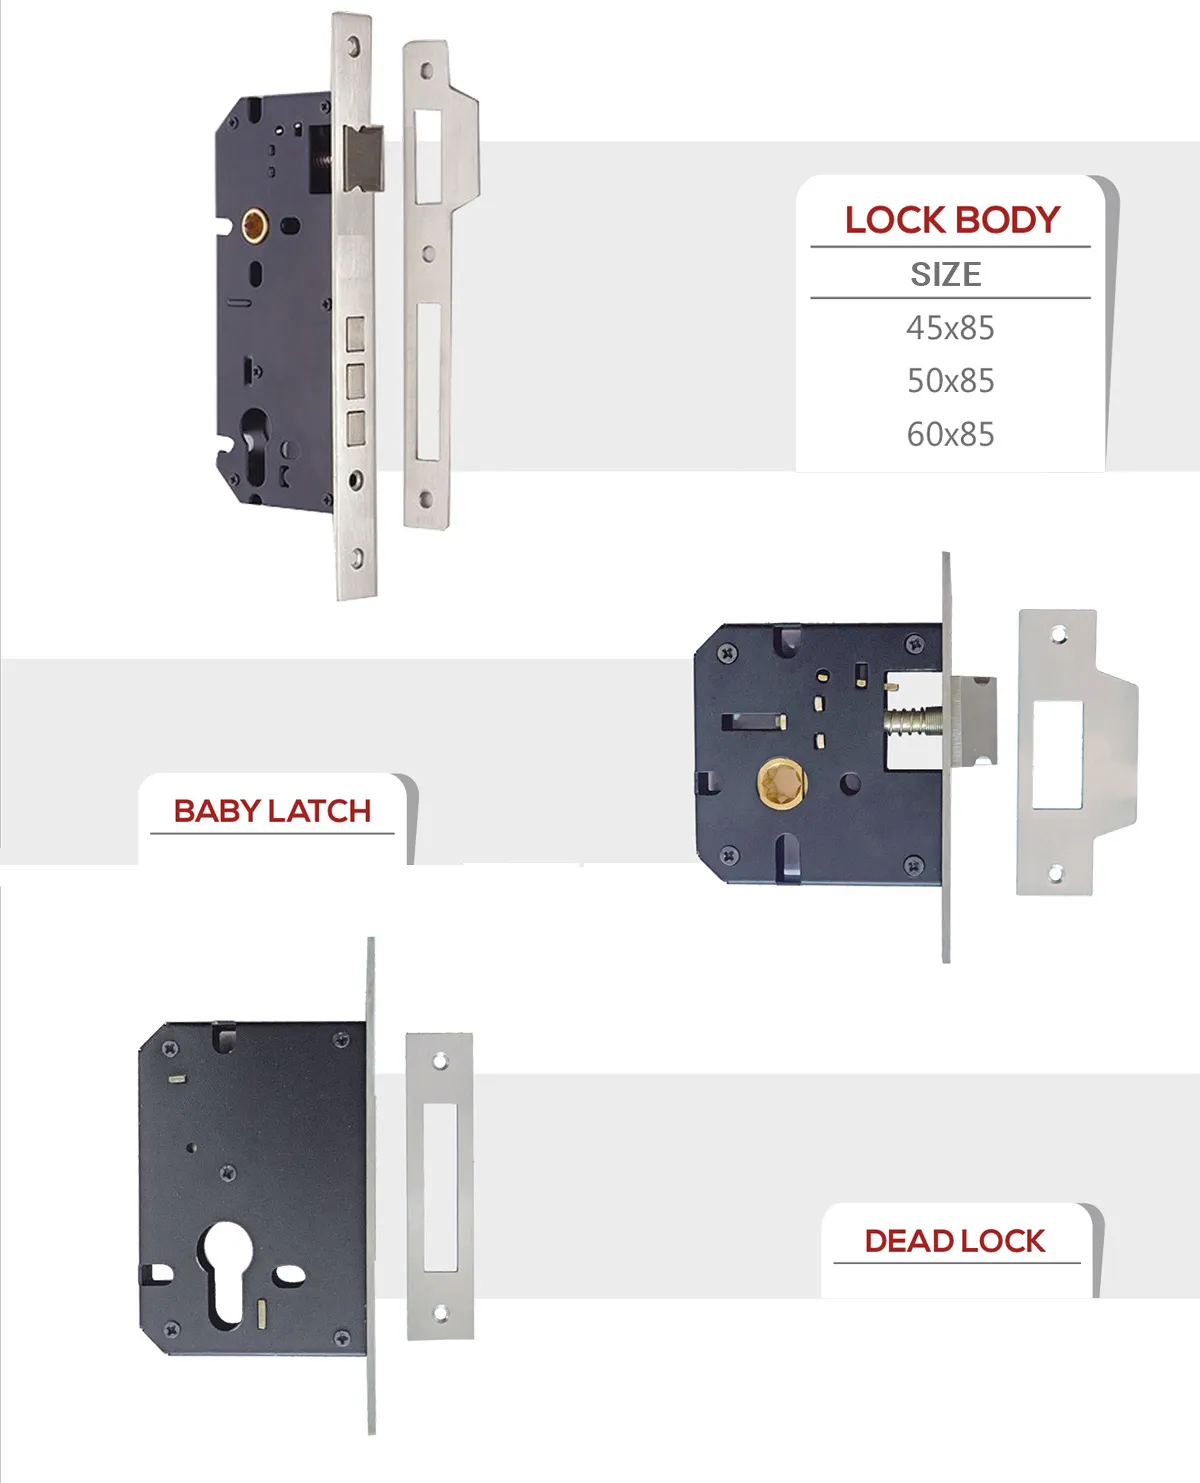 Safety lock manufacturer